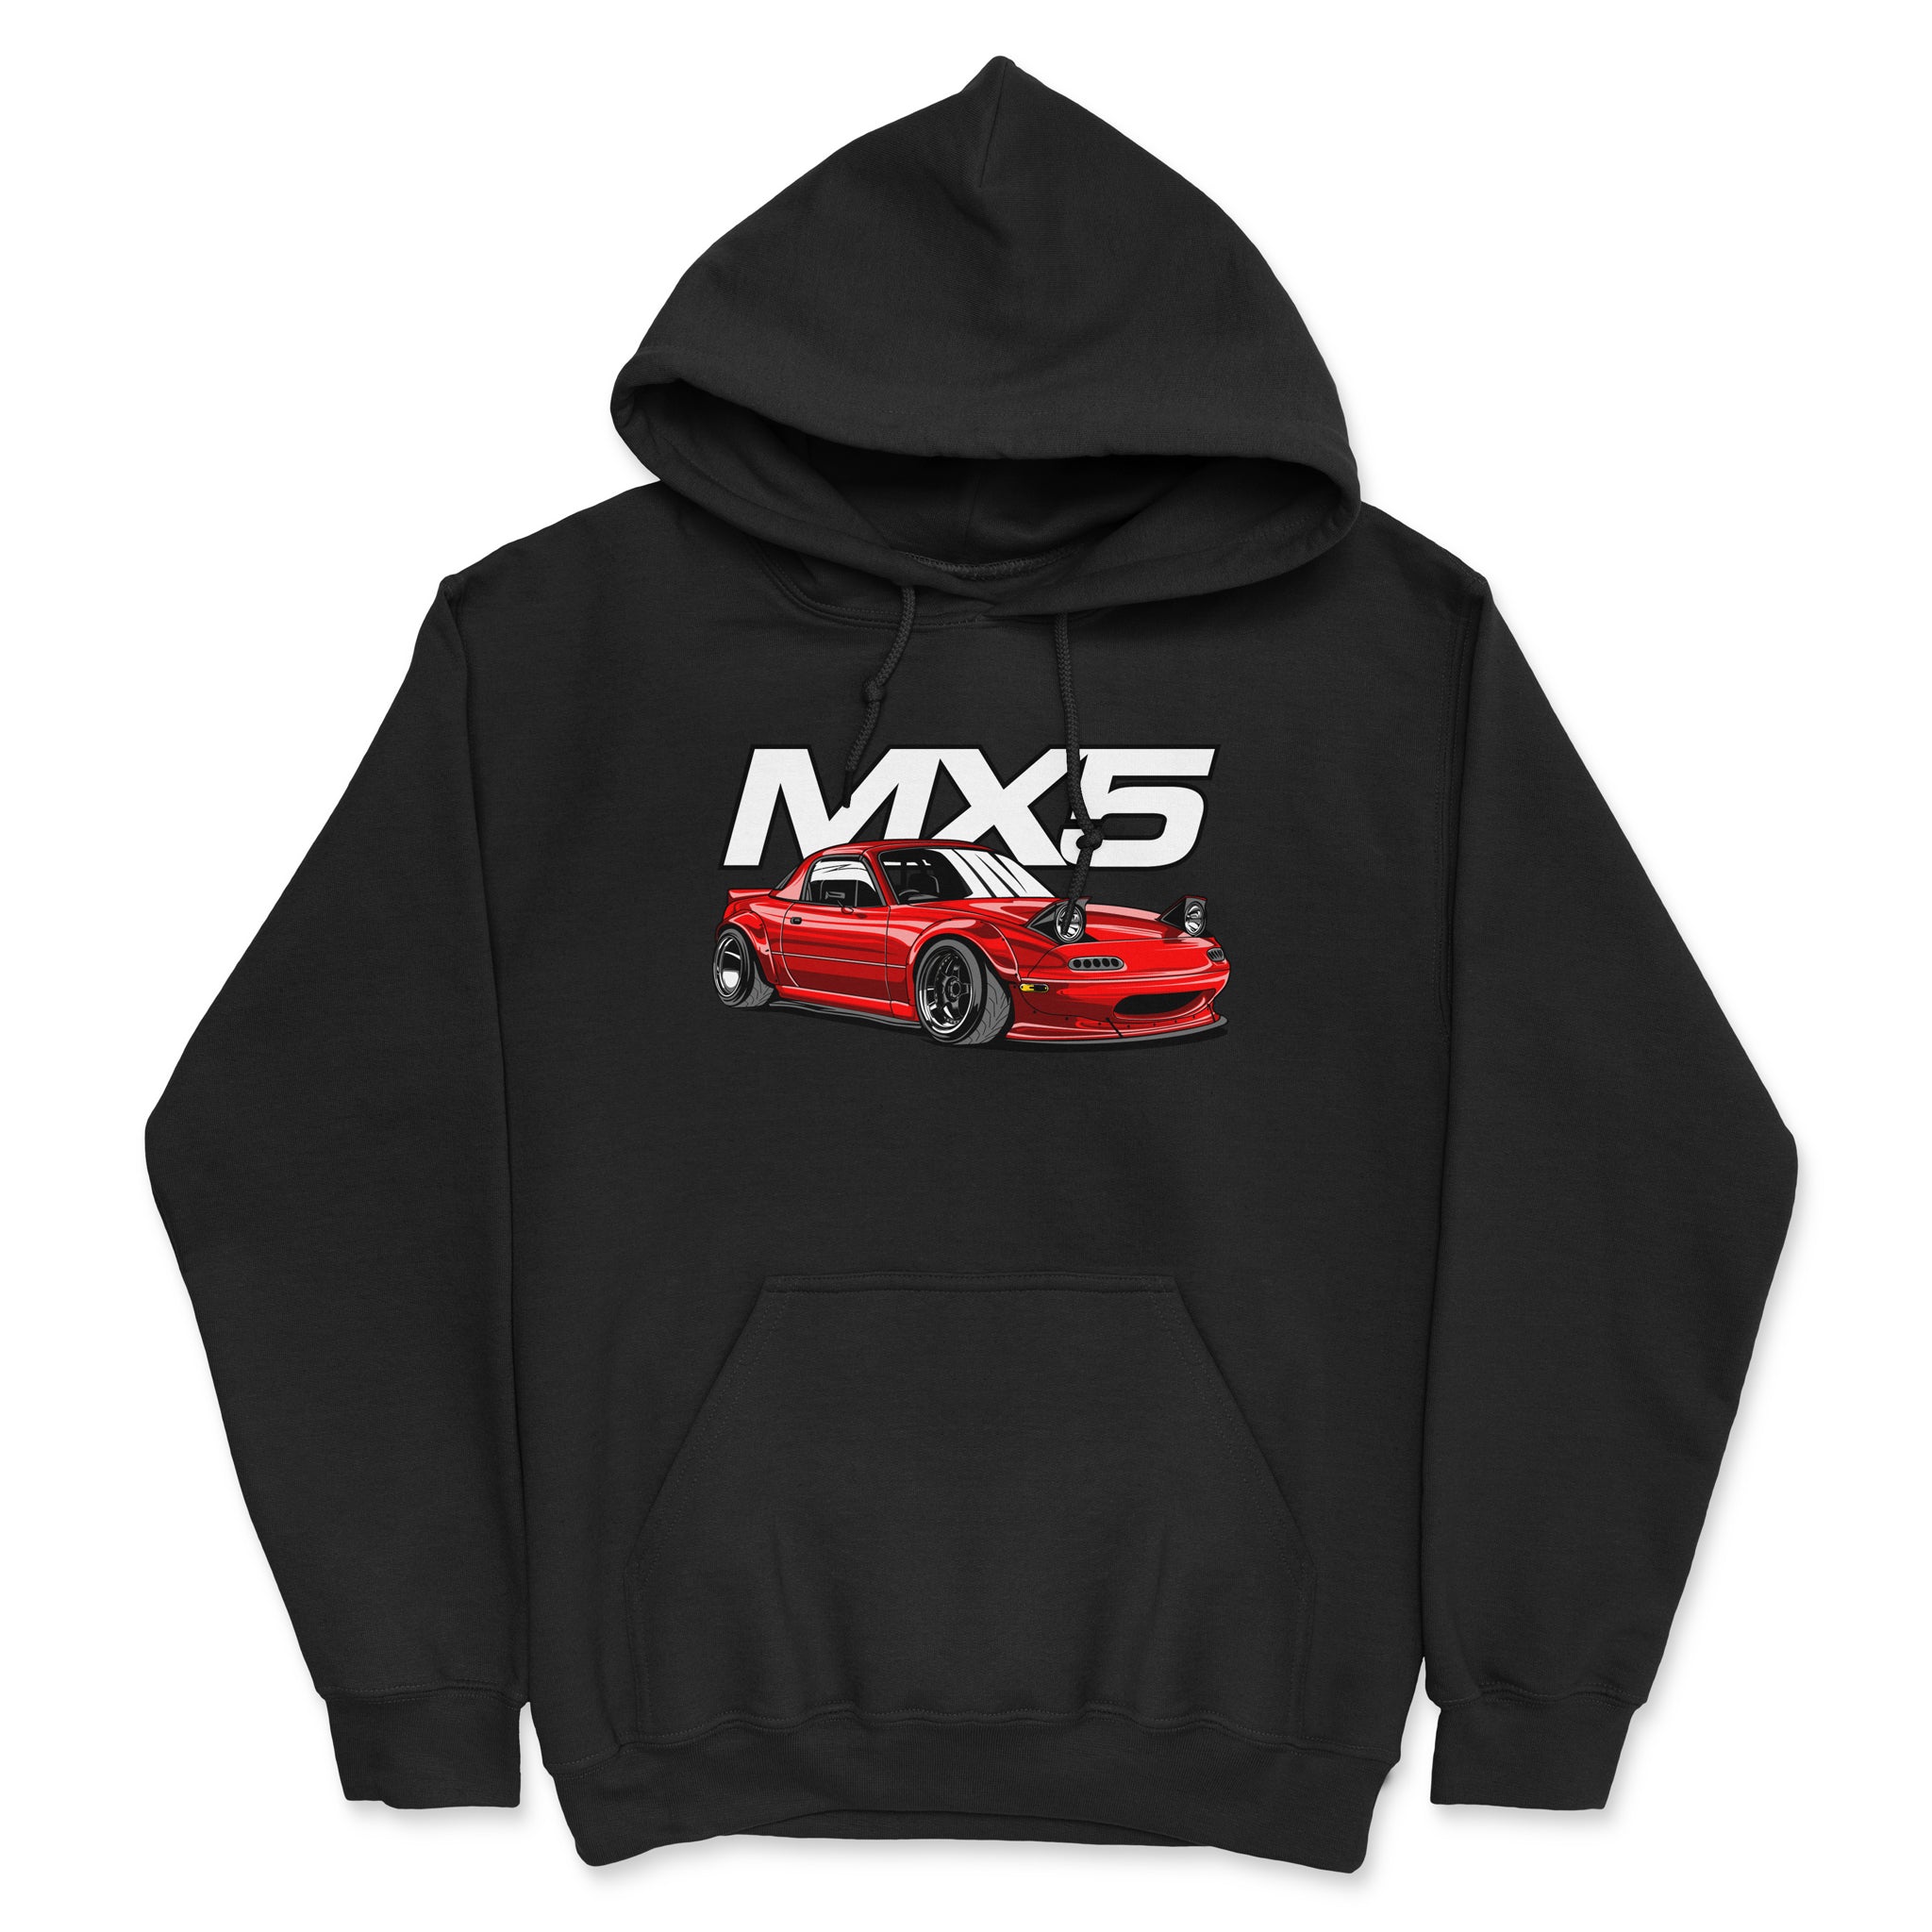 Mazda MX-5 Miata Car Hoodie in Black.